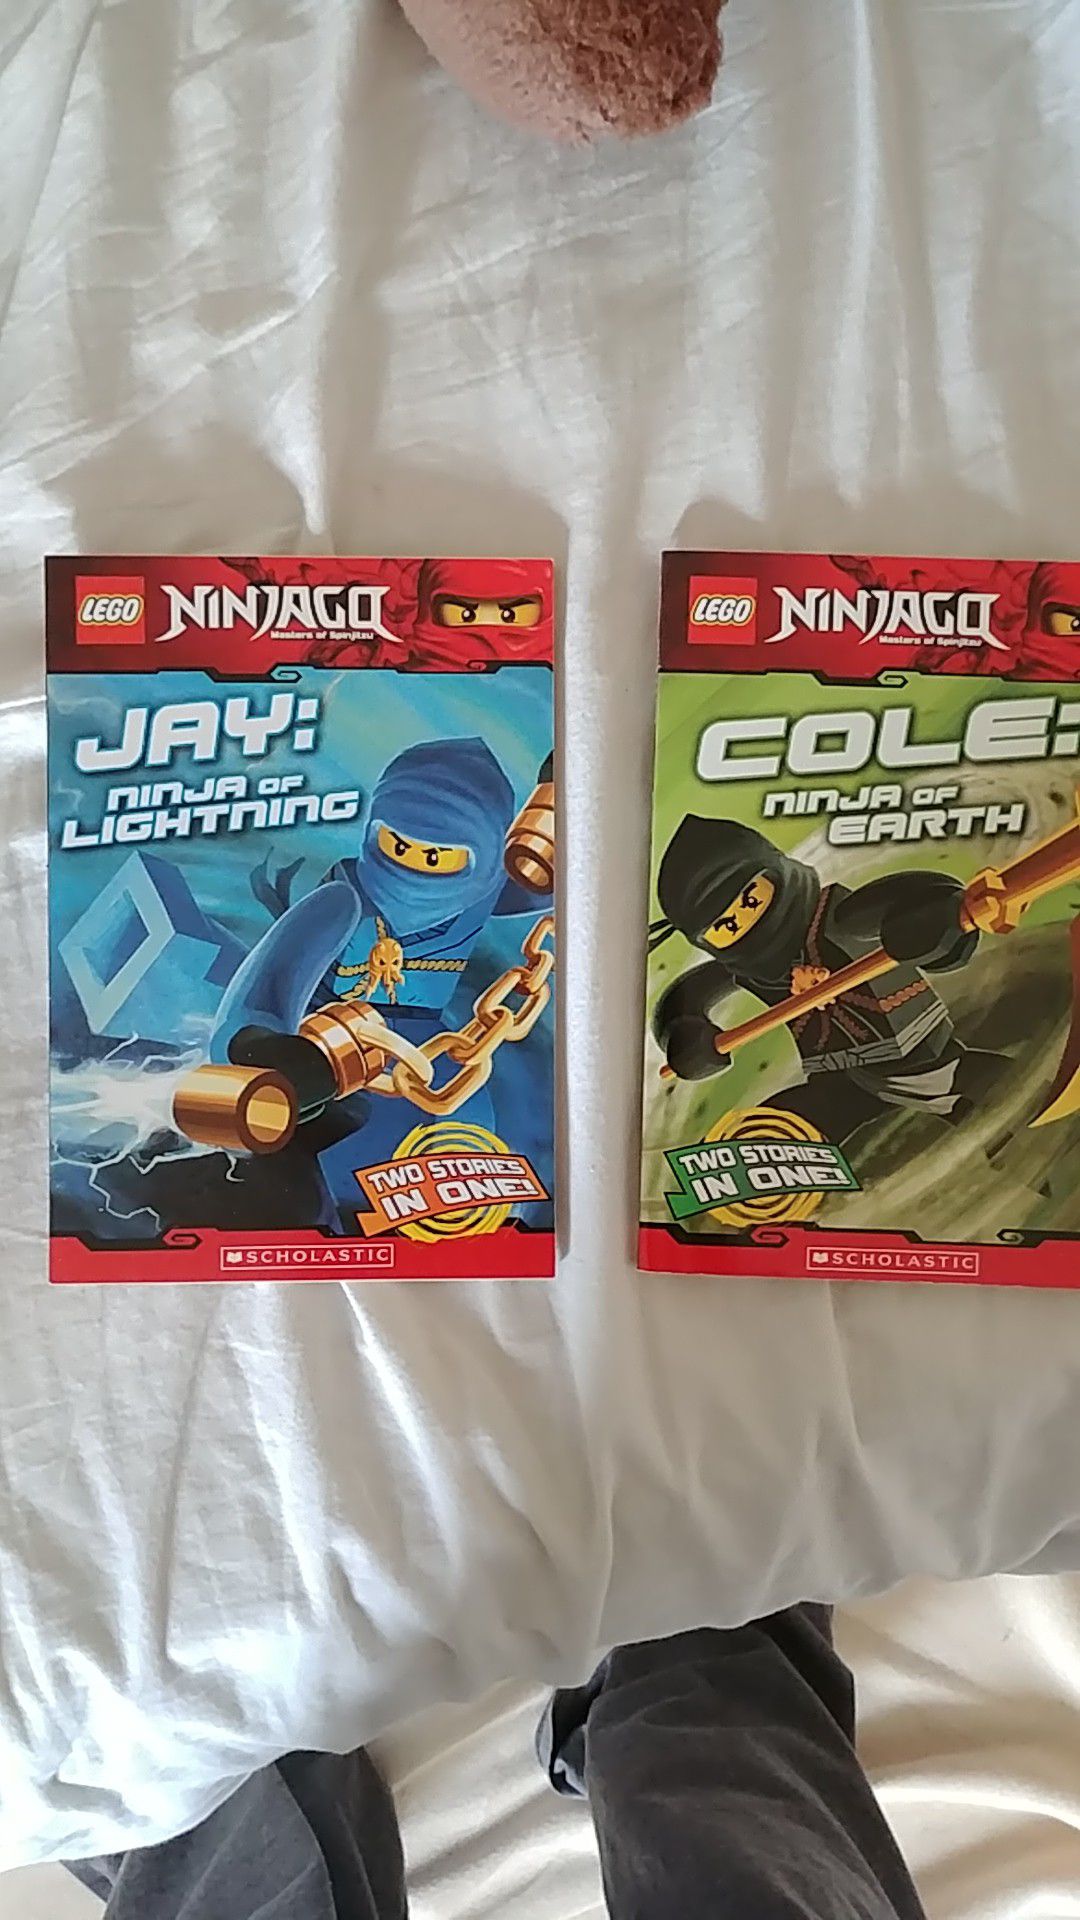 Lego Ninjago: Cole: Ninja of Earth/Jay: Ninja of Lightning